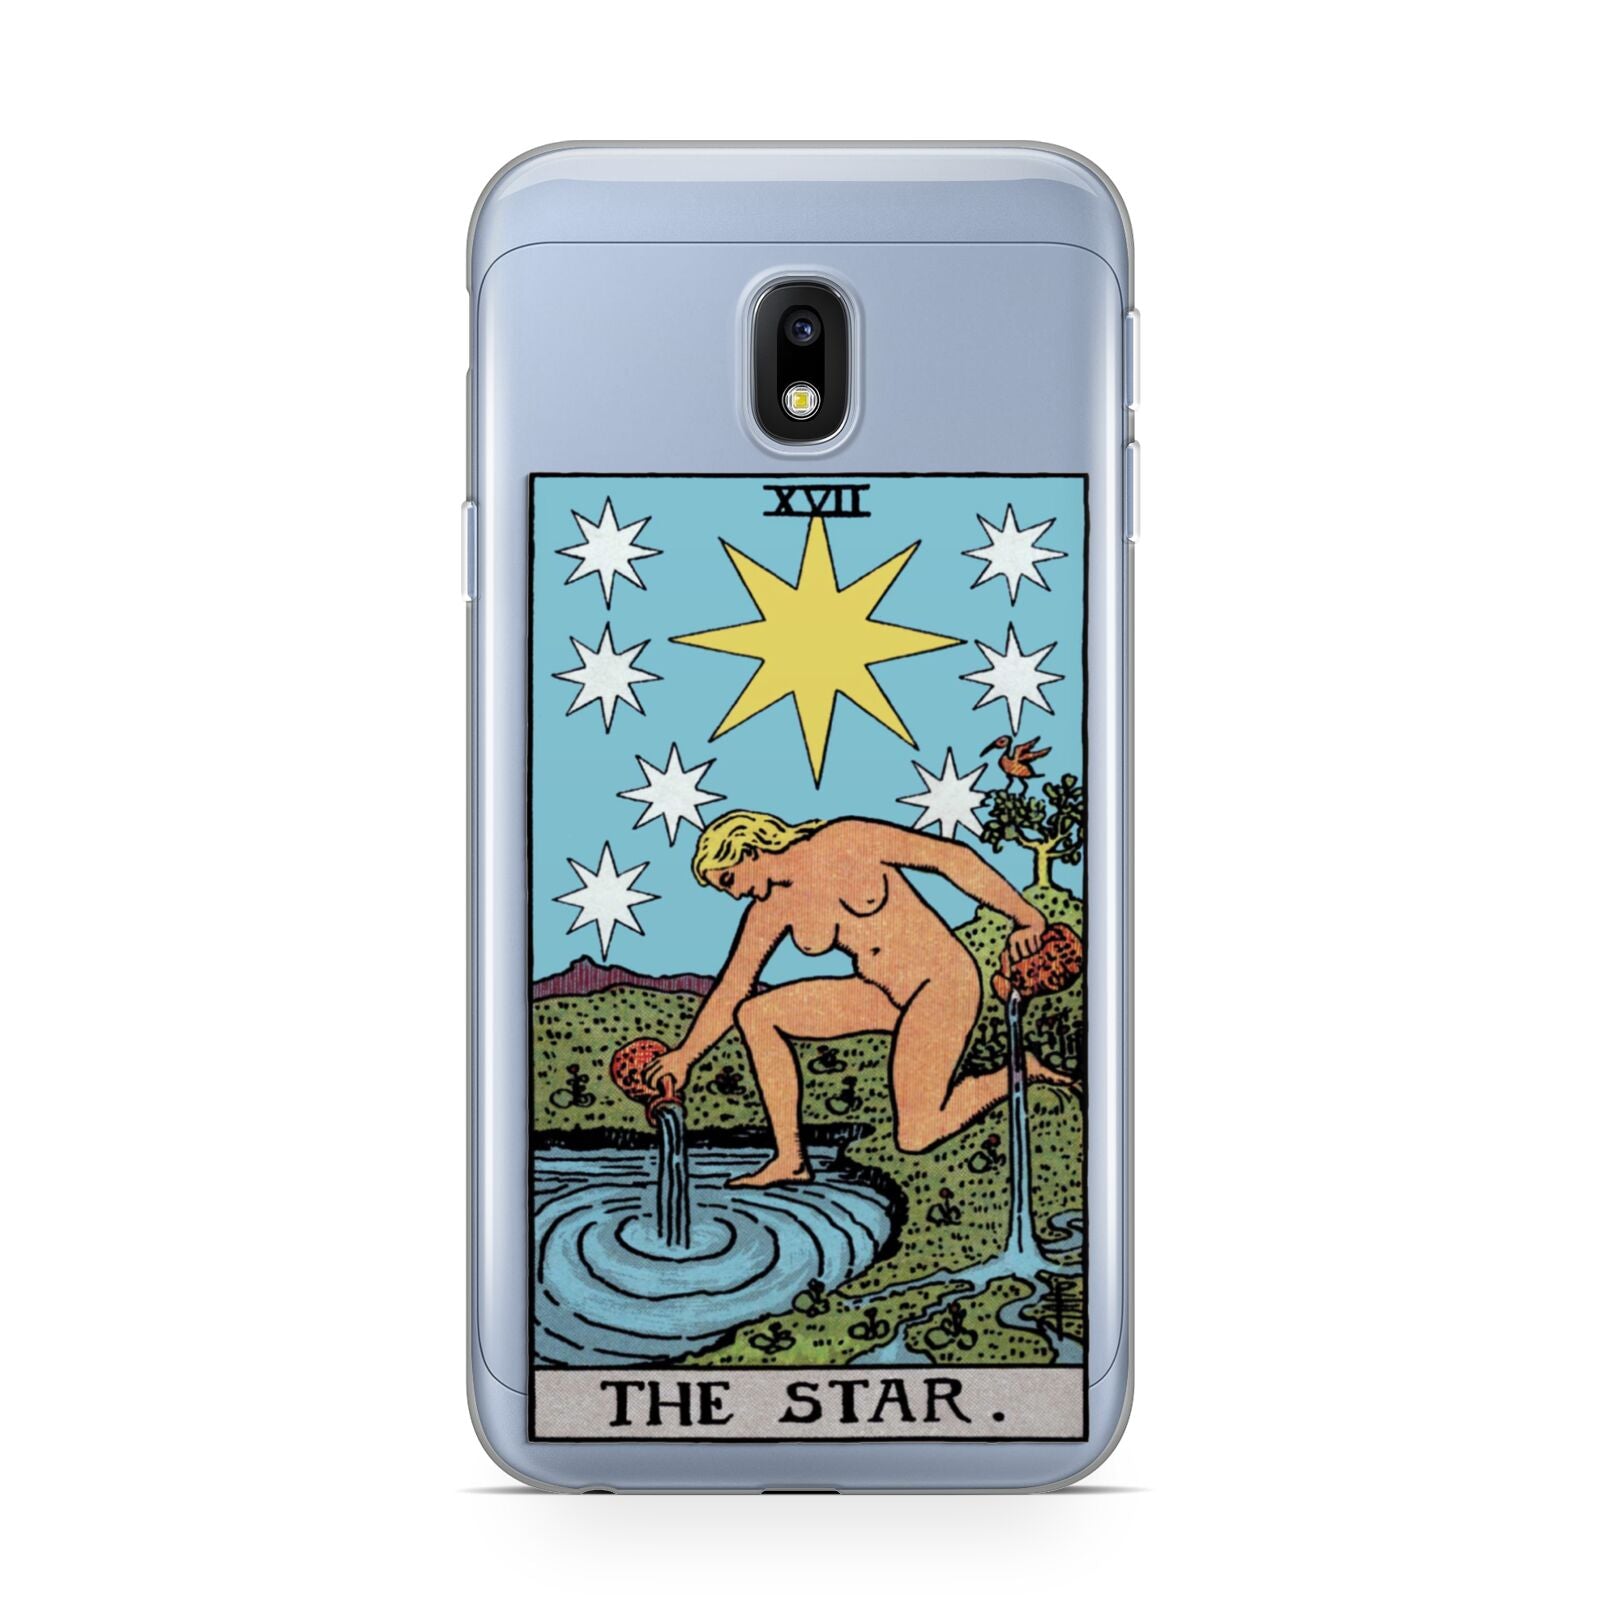 The Star Tarot Card Samsung Galaxy J3 2017 Case